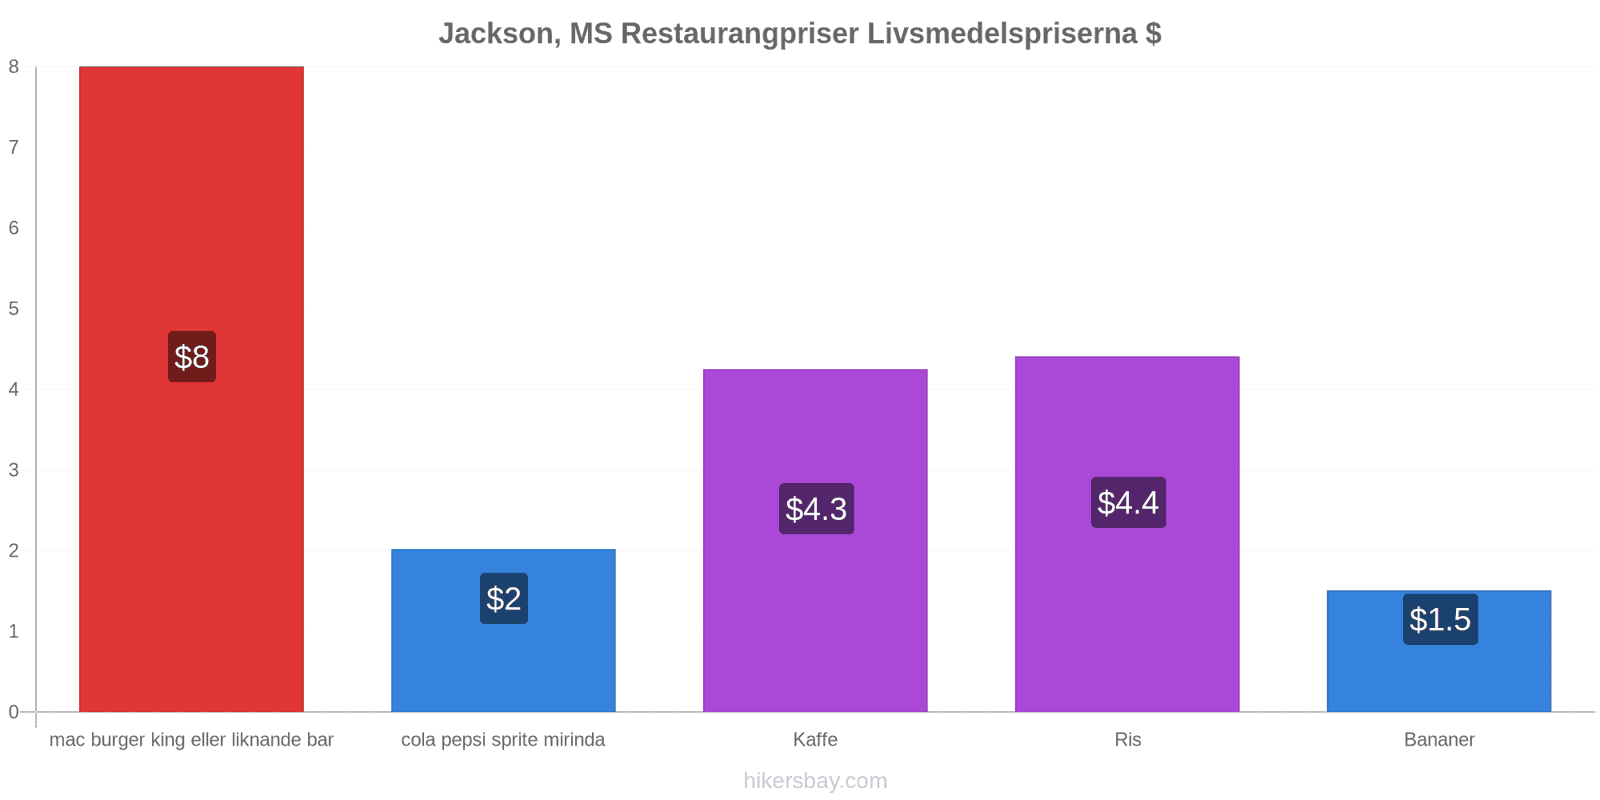 Jackson, MS prisändringar hikersbay.com